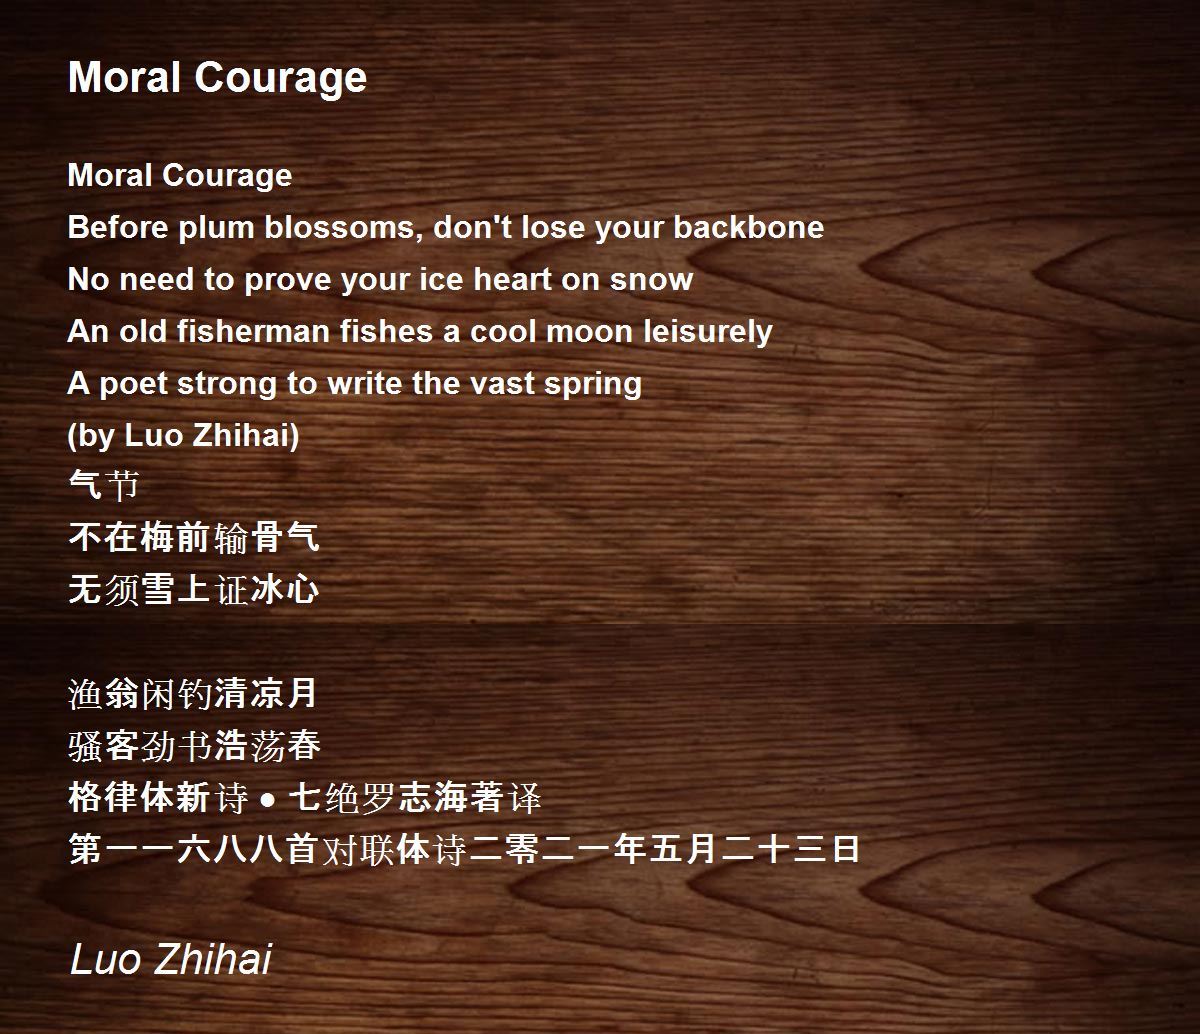 https://img.poemhunter.com/i/poem_images/278/moral-courage.jpg